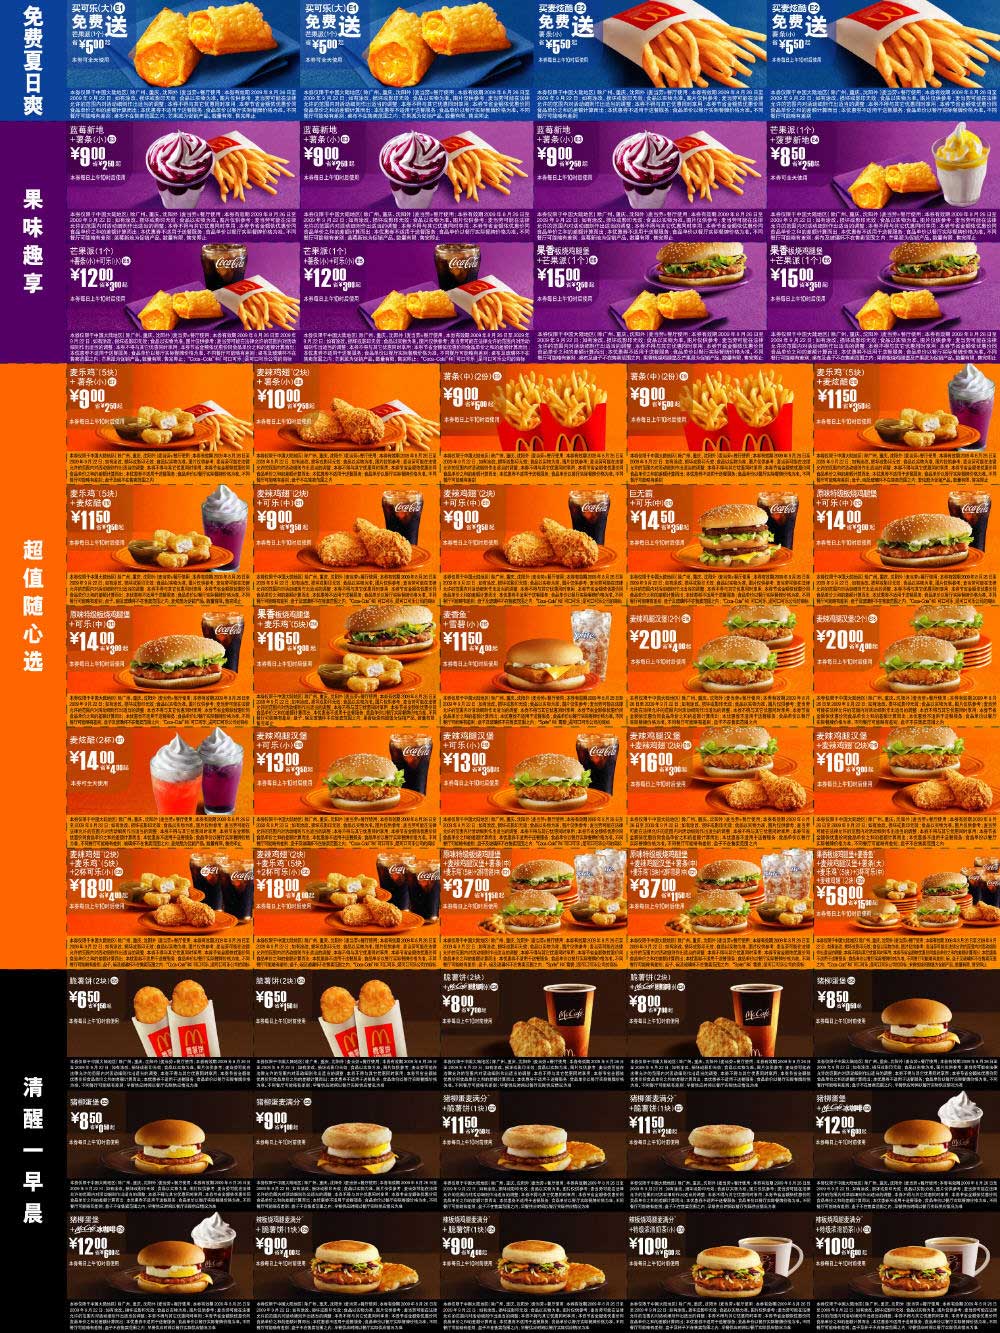 优惠券图片:麦当劳优惠券2009年8月9月整张打印(只需一张A4纸) 有效期2009年08月26日-2009年09月22日